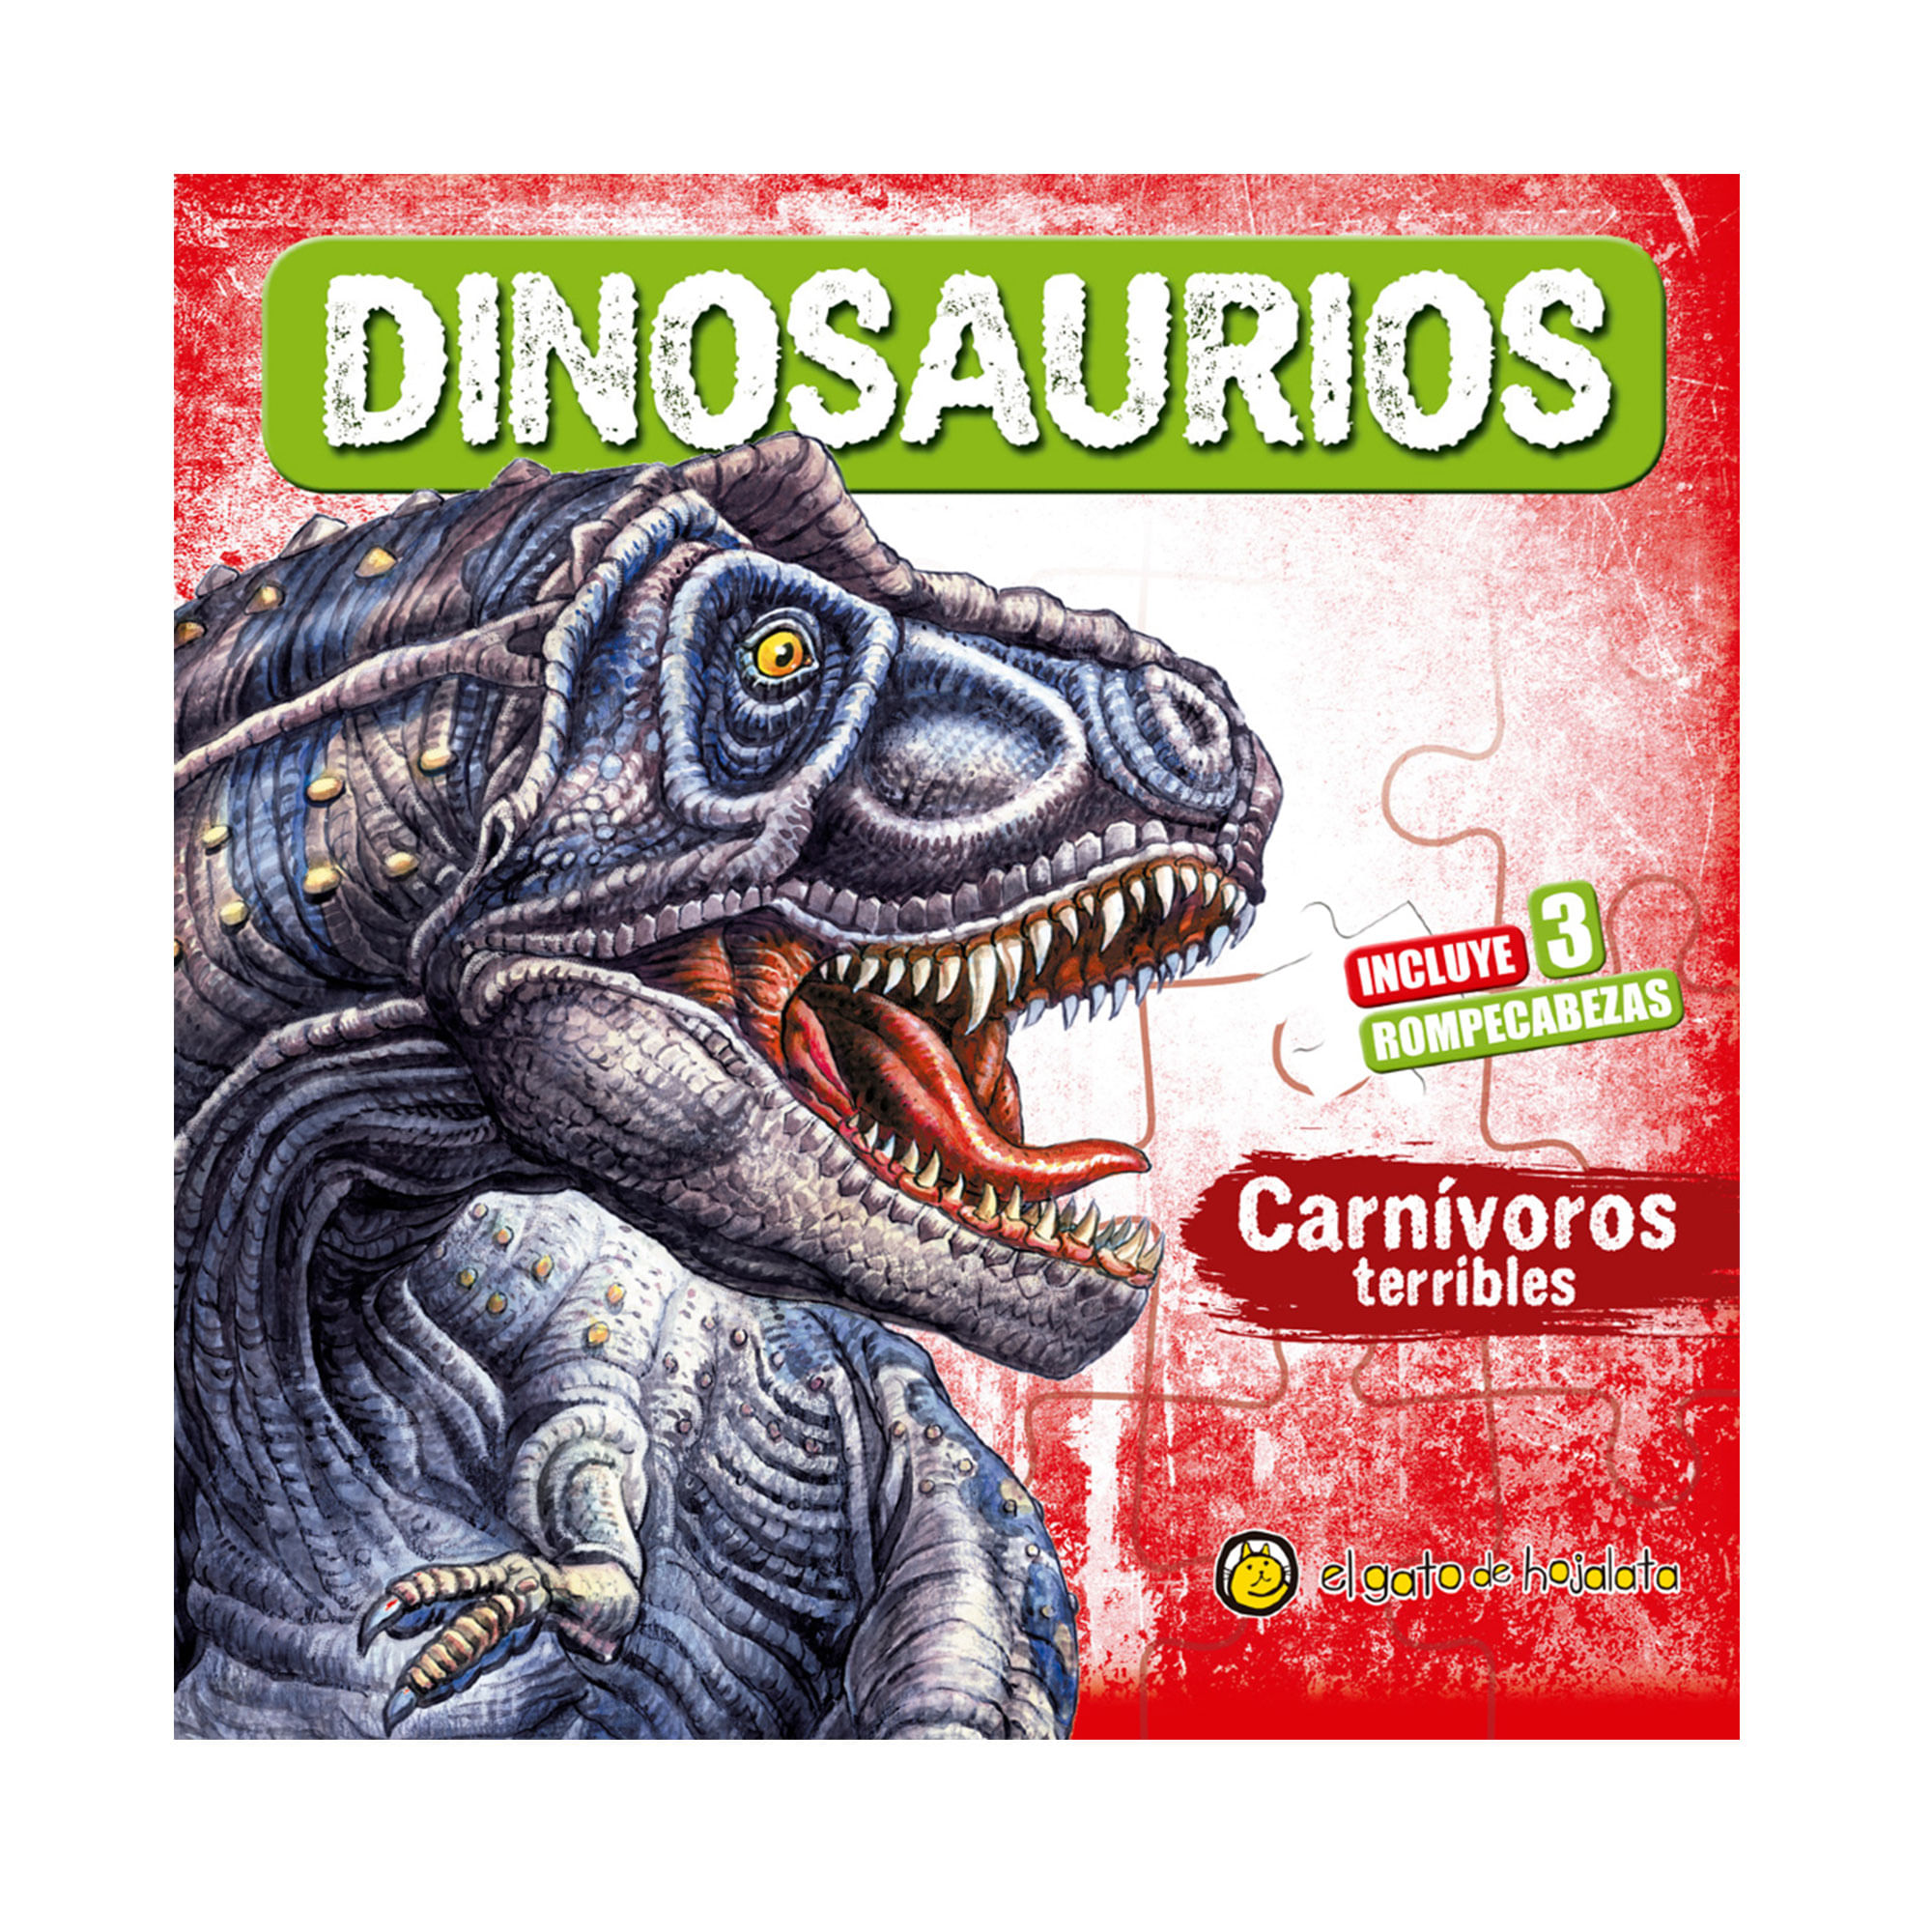 Dinosaurios carnivoros terribles con rompecabezas